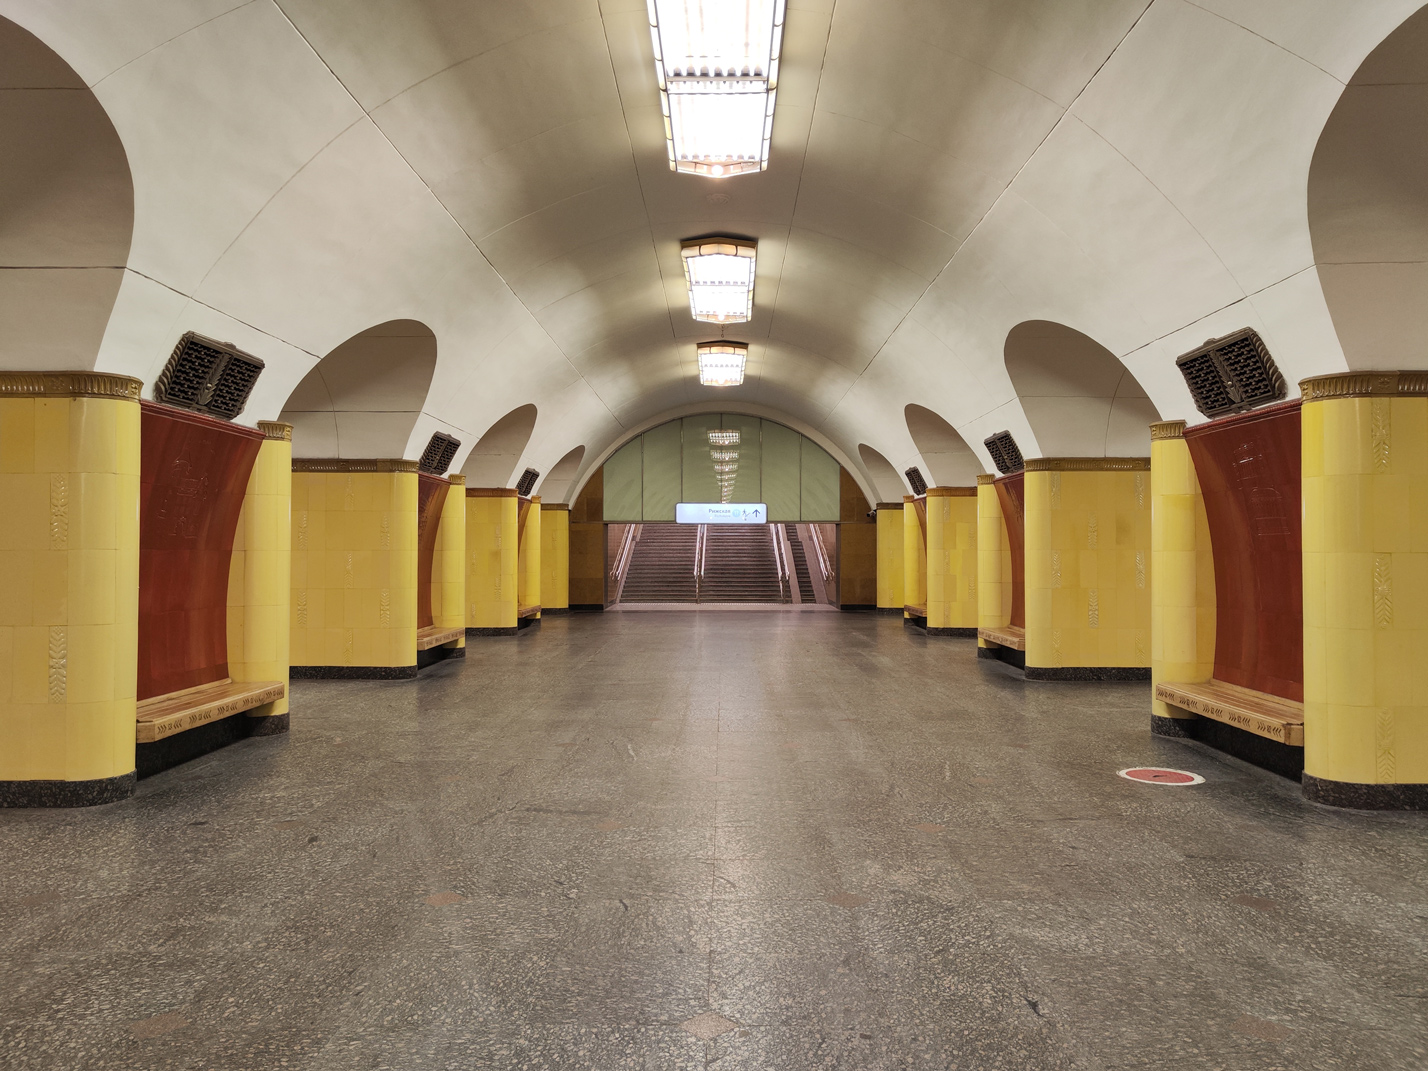 Moskva — Metro — [6] Kaluzhsko-Rizhskaya Line